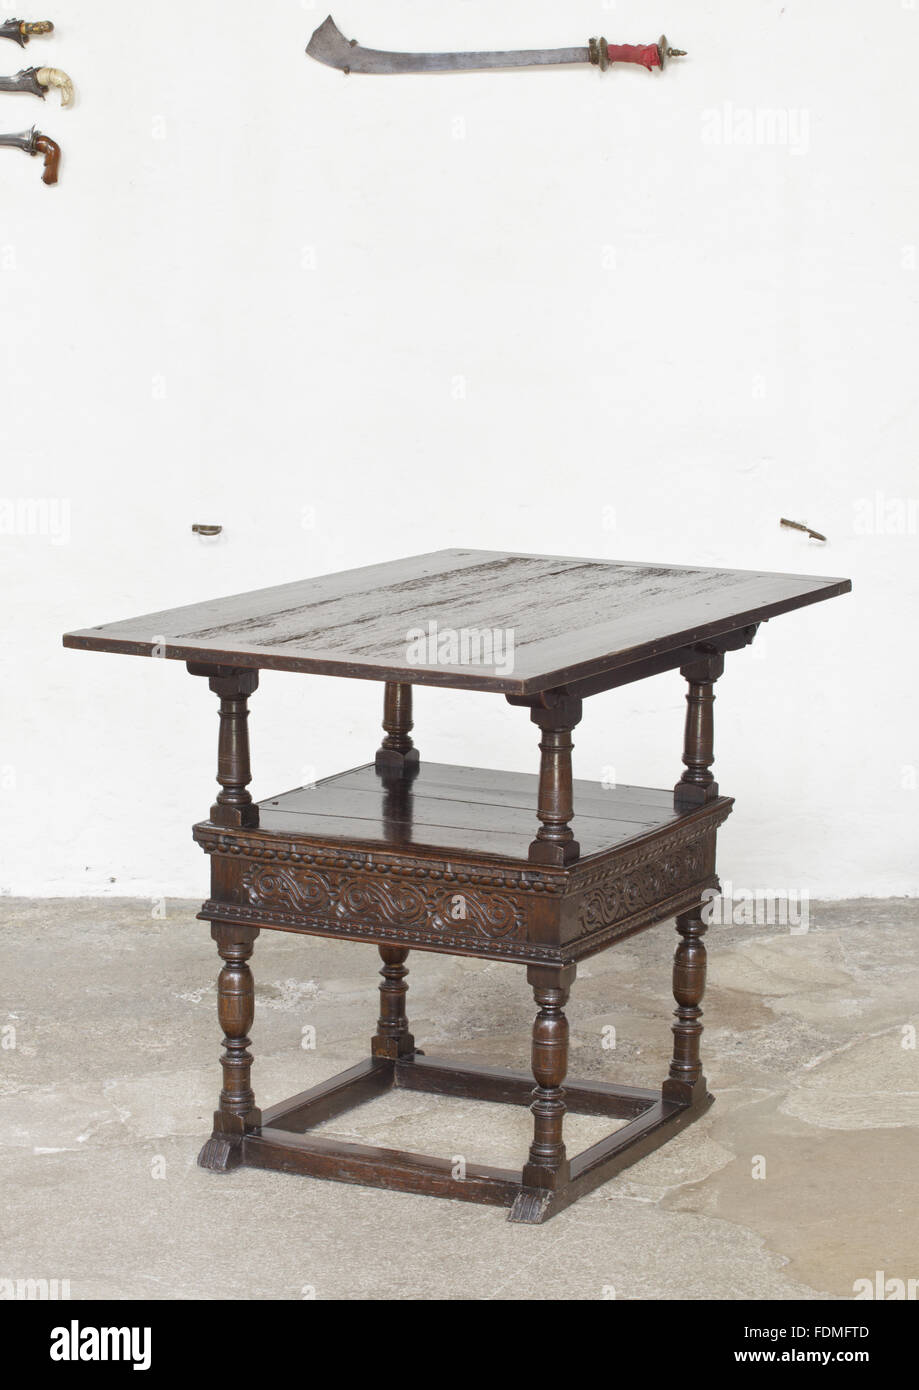 Le président de la table en chêne, avec rabattement, anglais, 1627, présentée ici dans sa forme de table, dans le hall de Cotehele, Cornwall. Numéro d'Inventaire National Trust : 347691 Banque D'Images